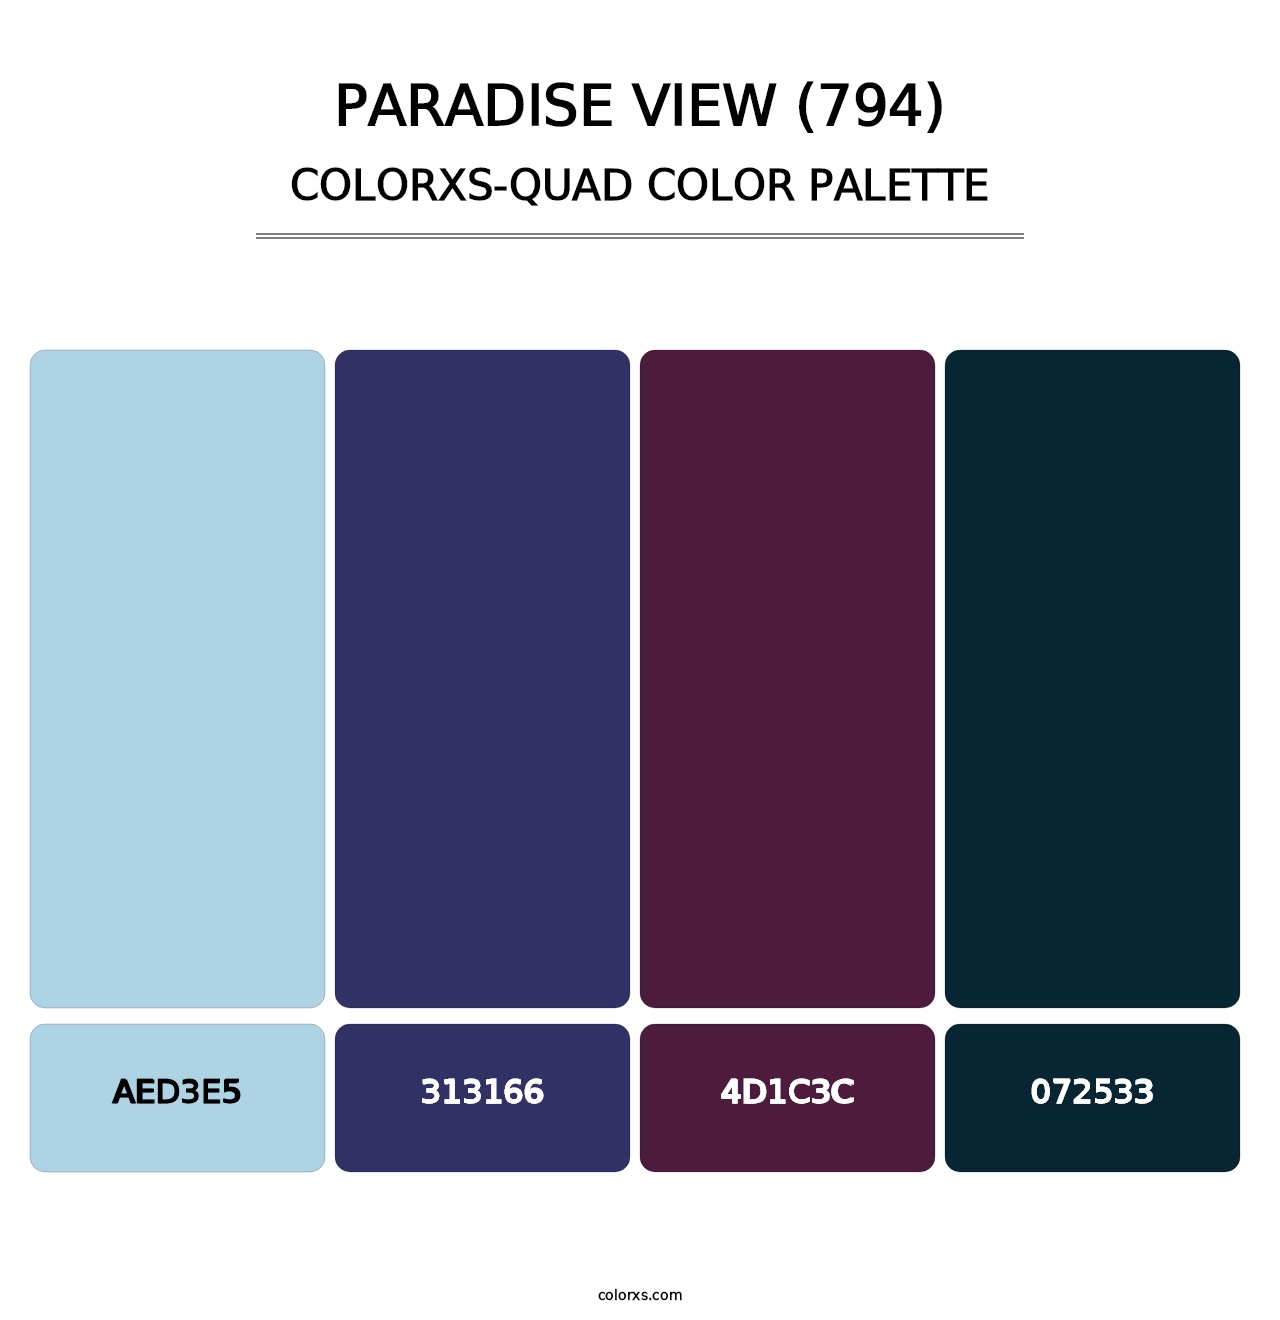 Paradise View (794) - Colorxs Quad Palette